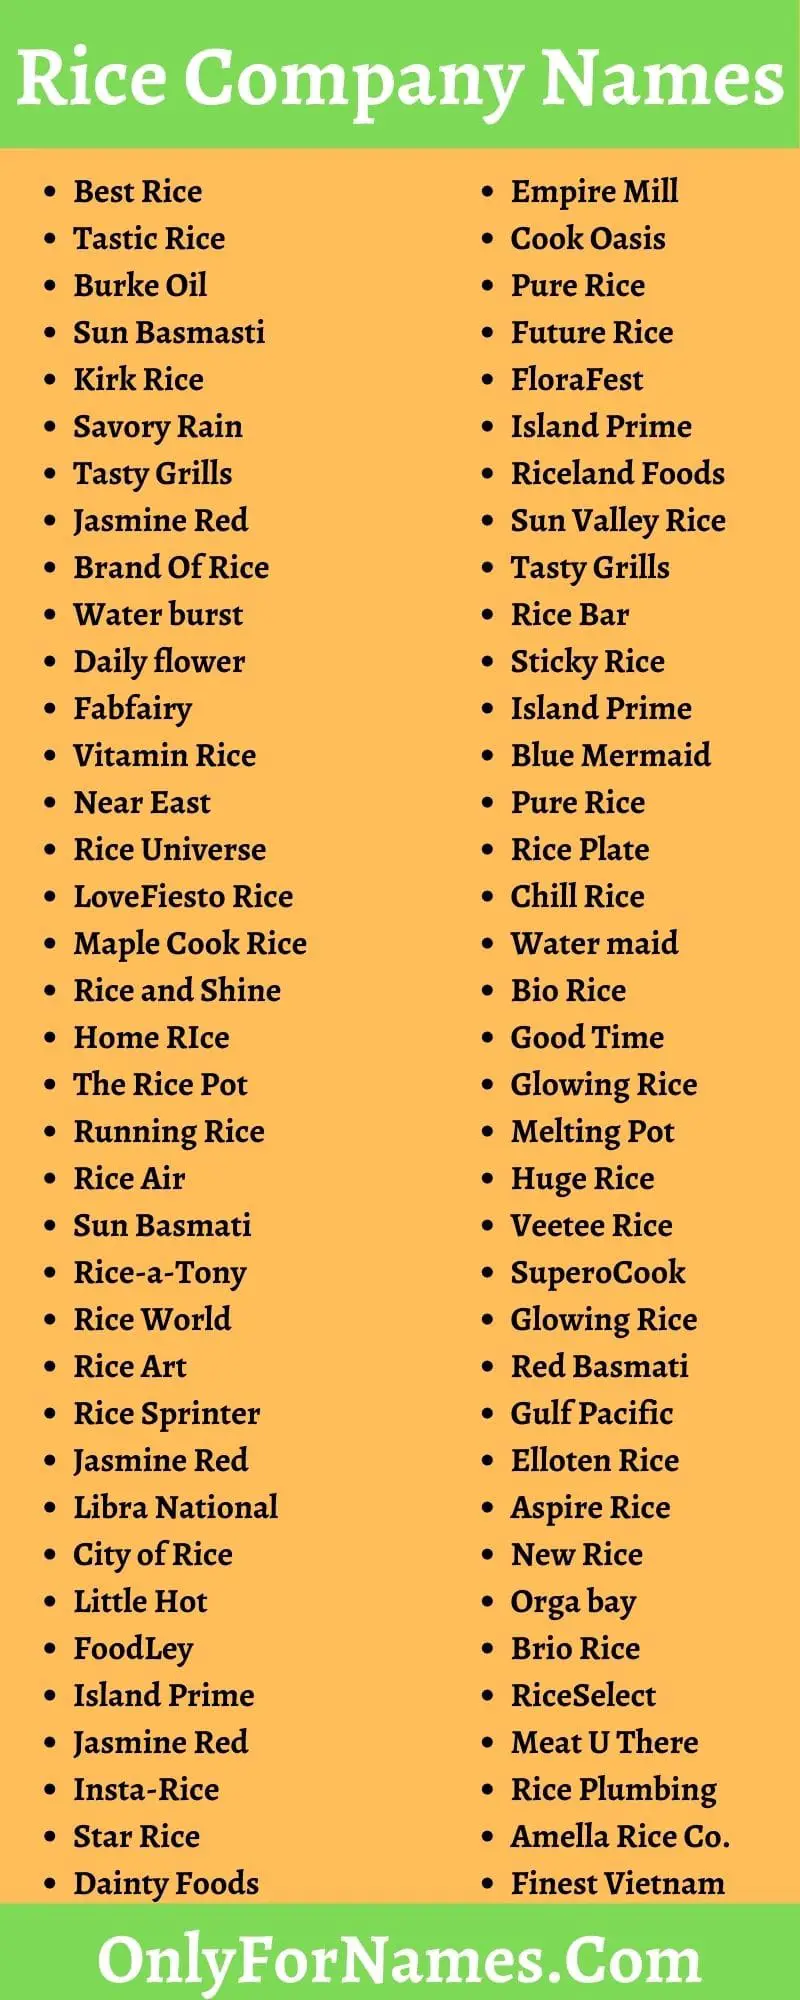 Rice Company Names